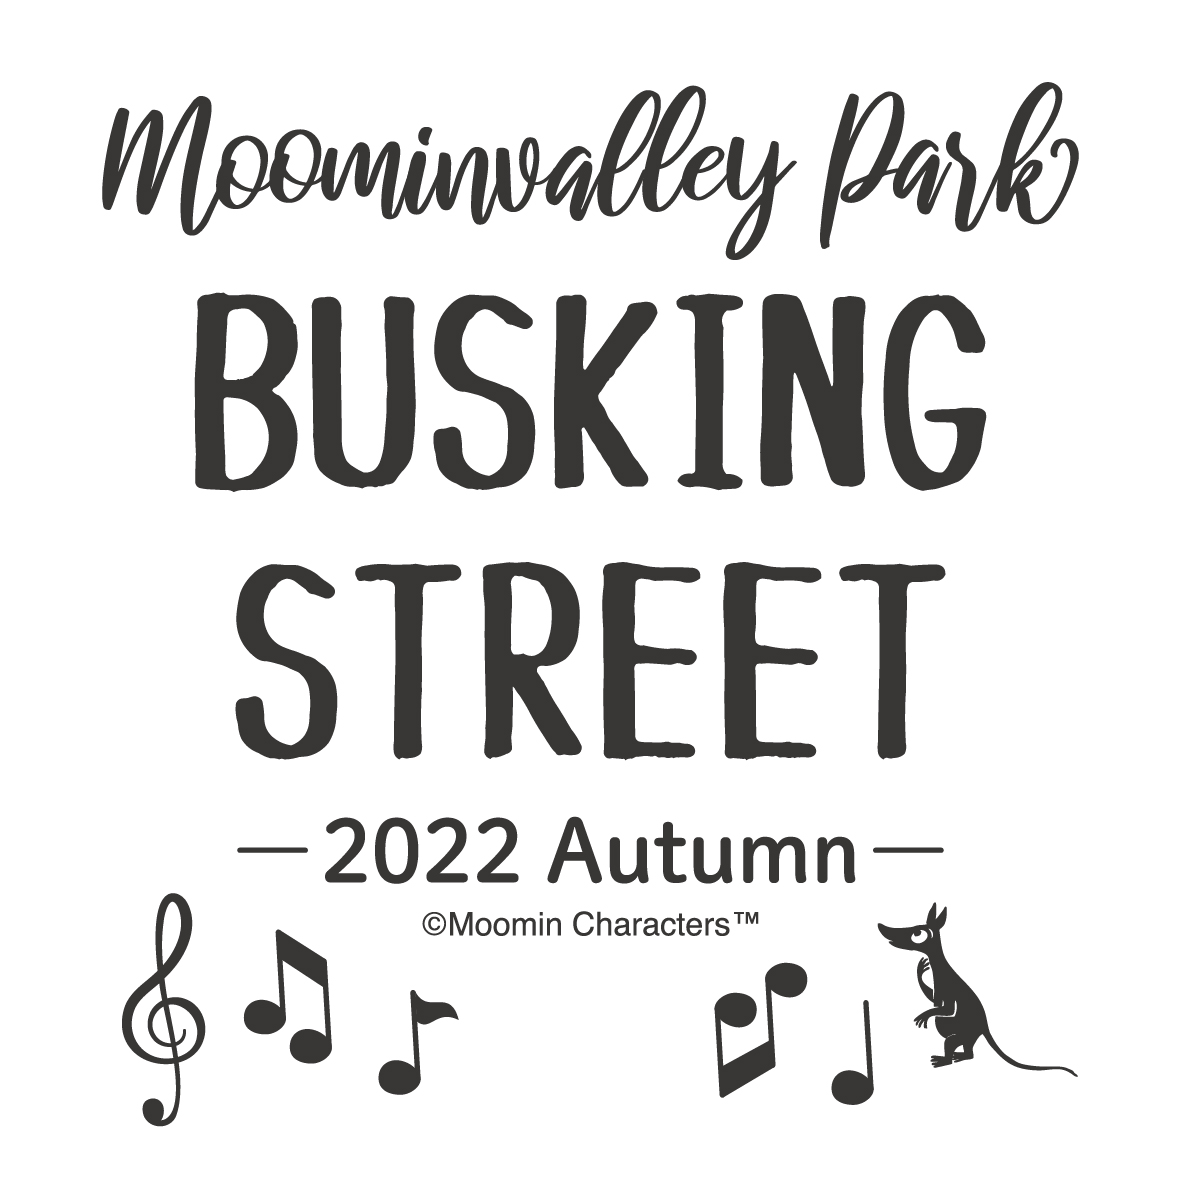 ストリートライブイベント「Moominvalley Park BUSKING STREET - 2022 Autumn -」